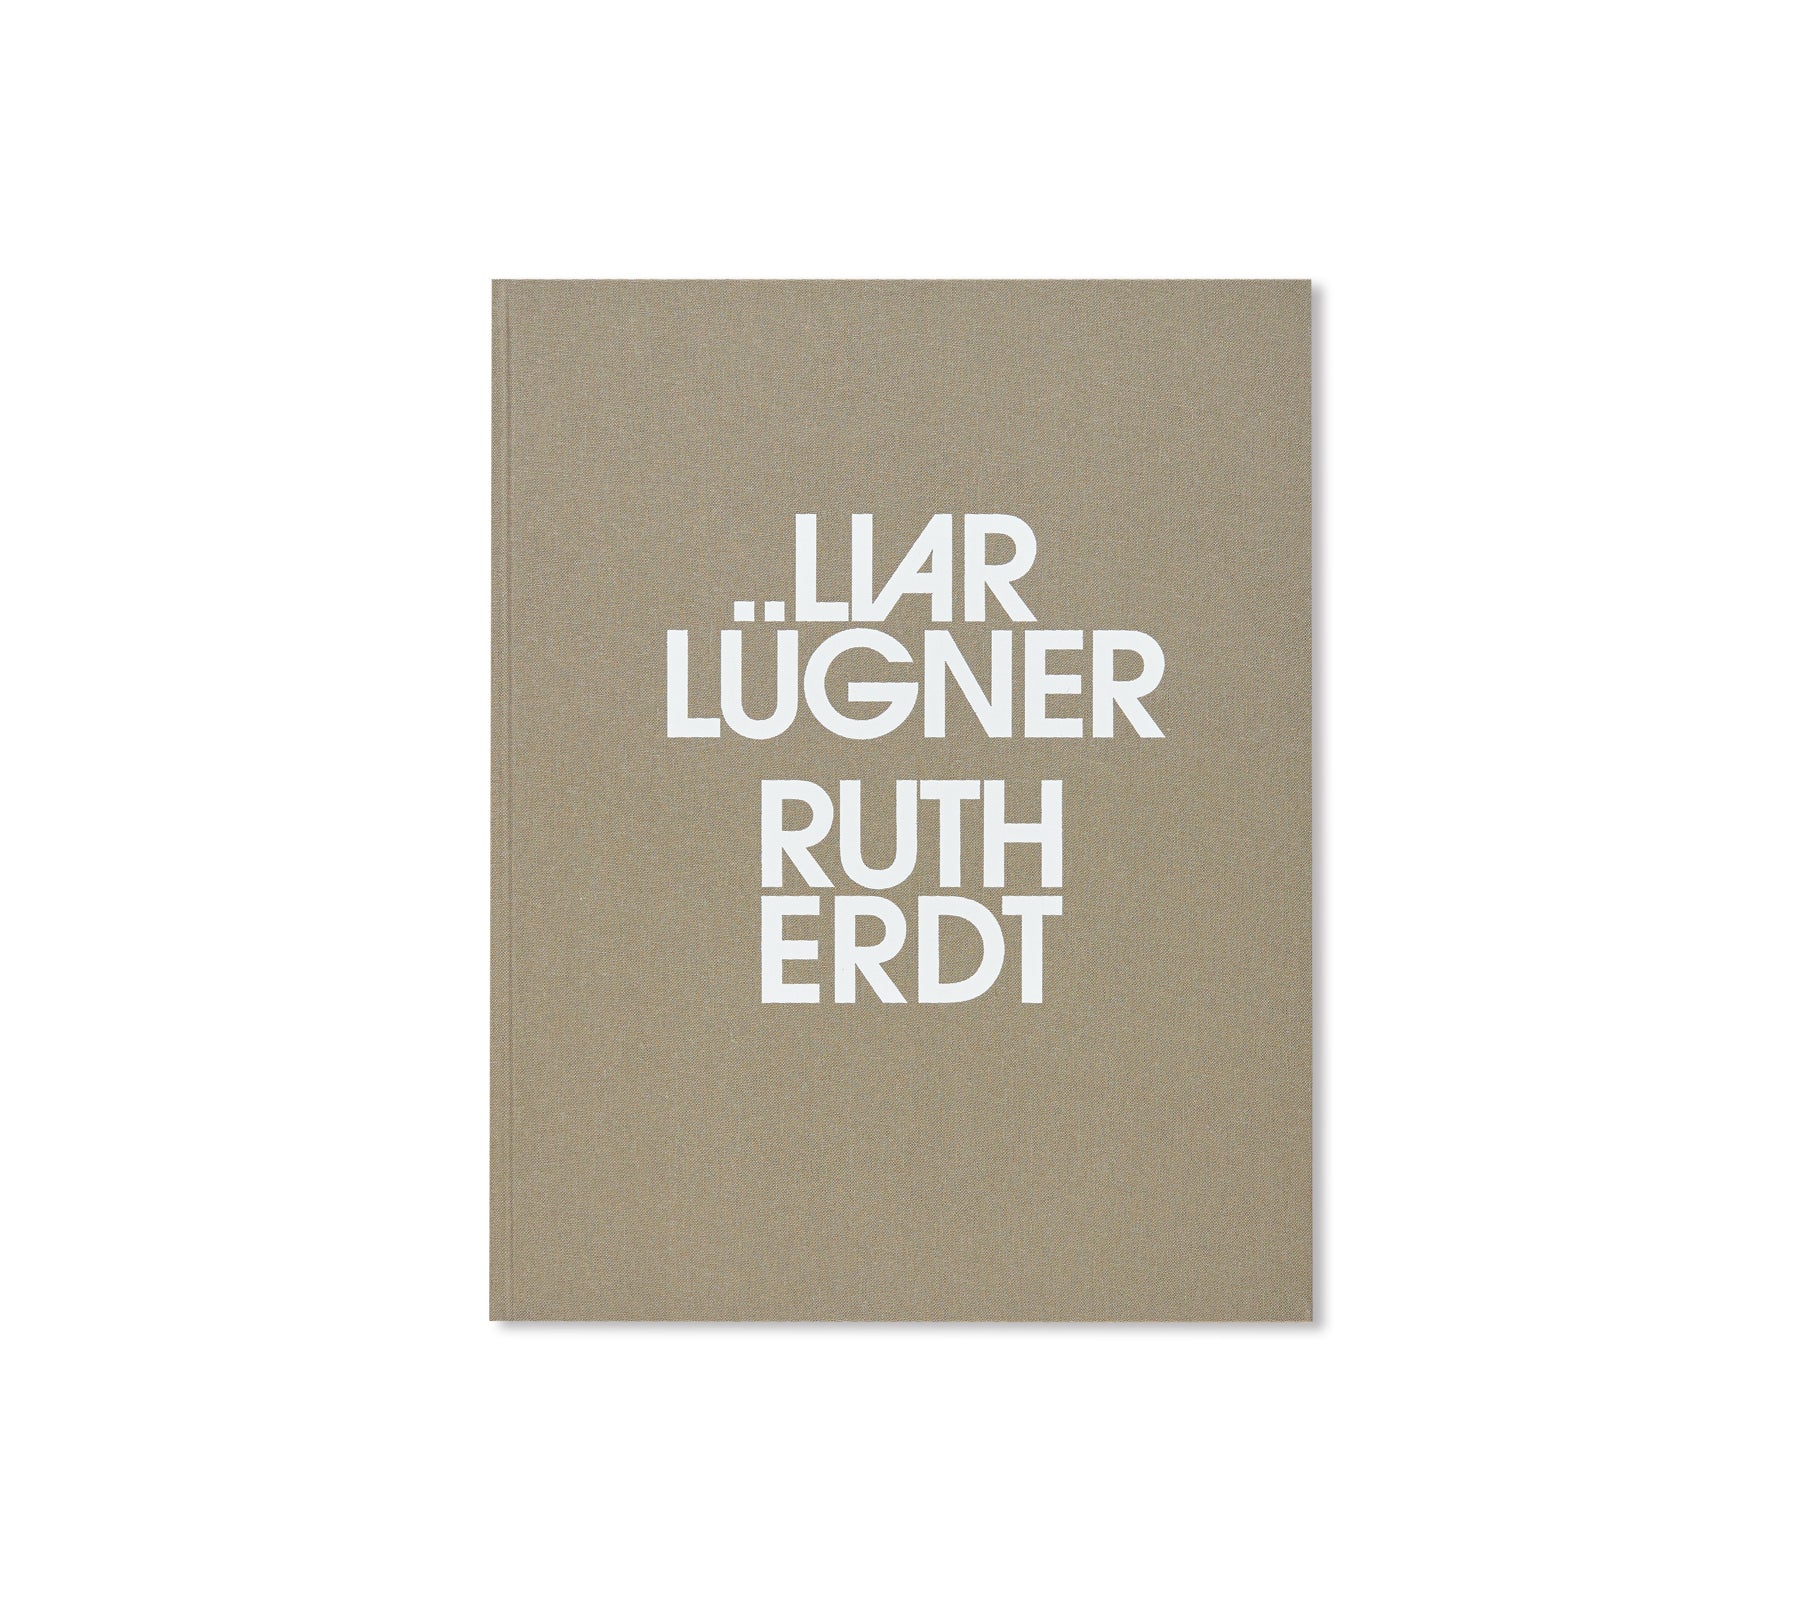 LIAR LÜGNER by Ruth Erdt